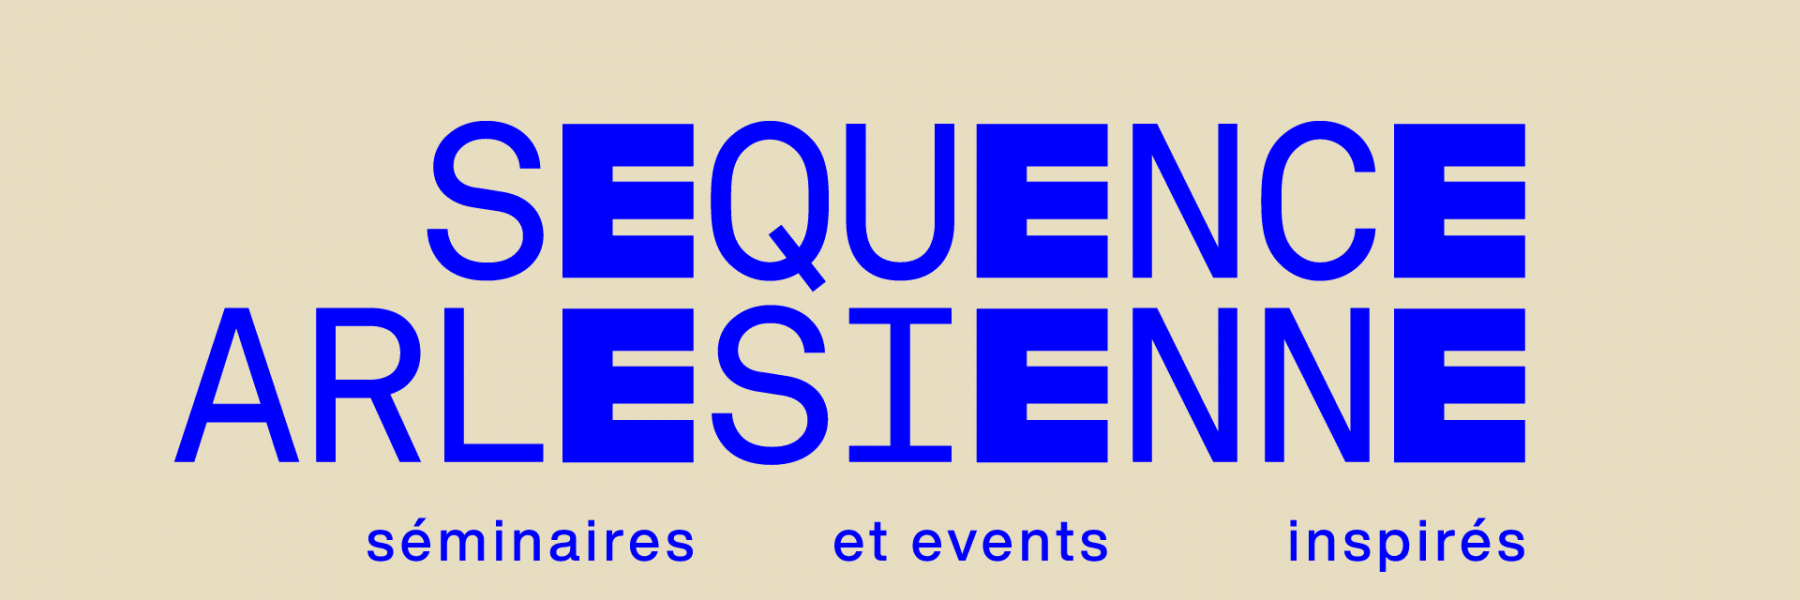 logo-sequencearlesienne